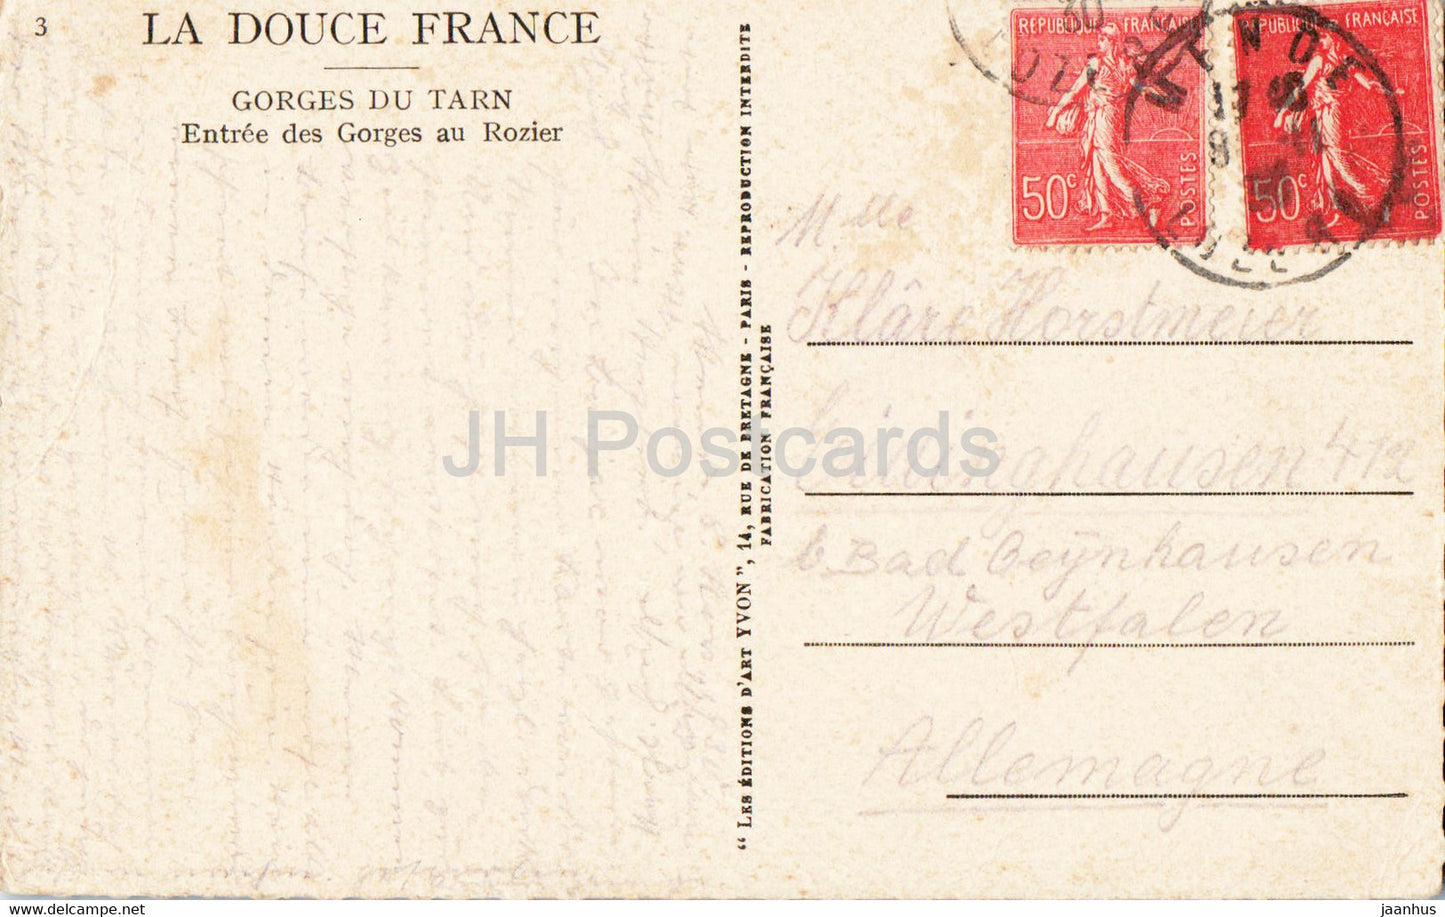 Gorges du Tarn - Entrée des Gorges au Rozier - La Douce France - 3 - carte postale ancienne - France - occasion